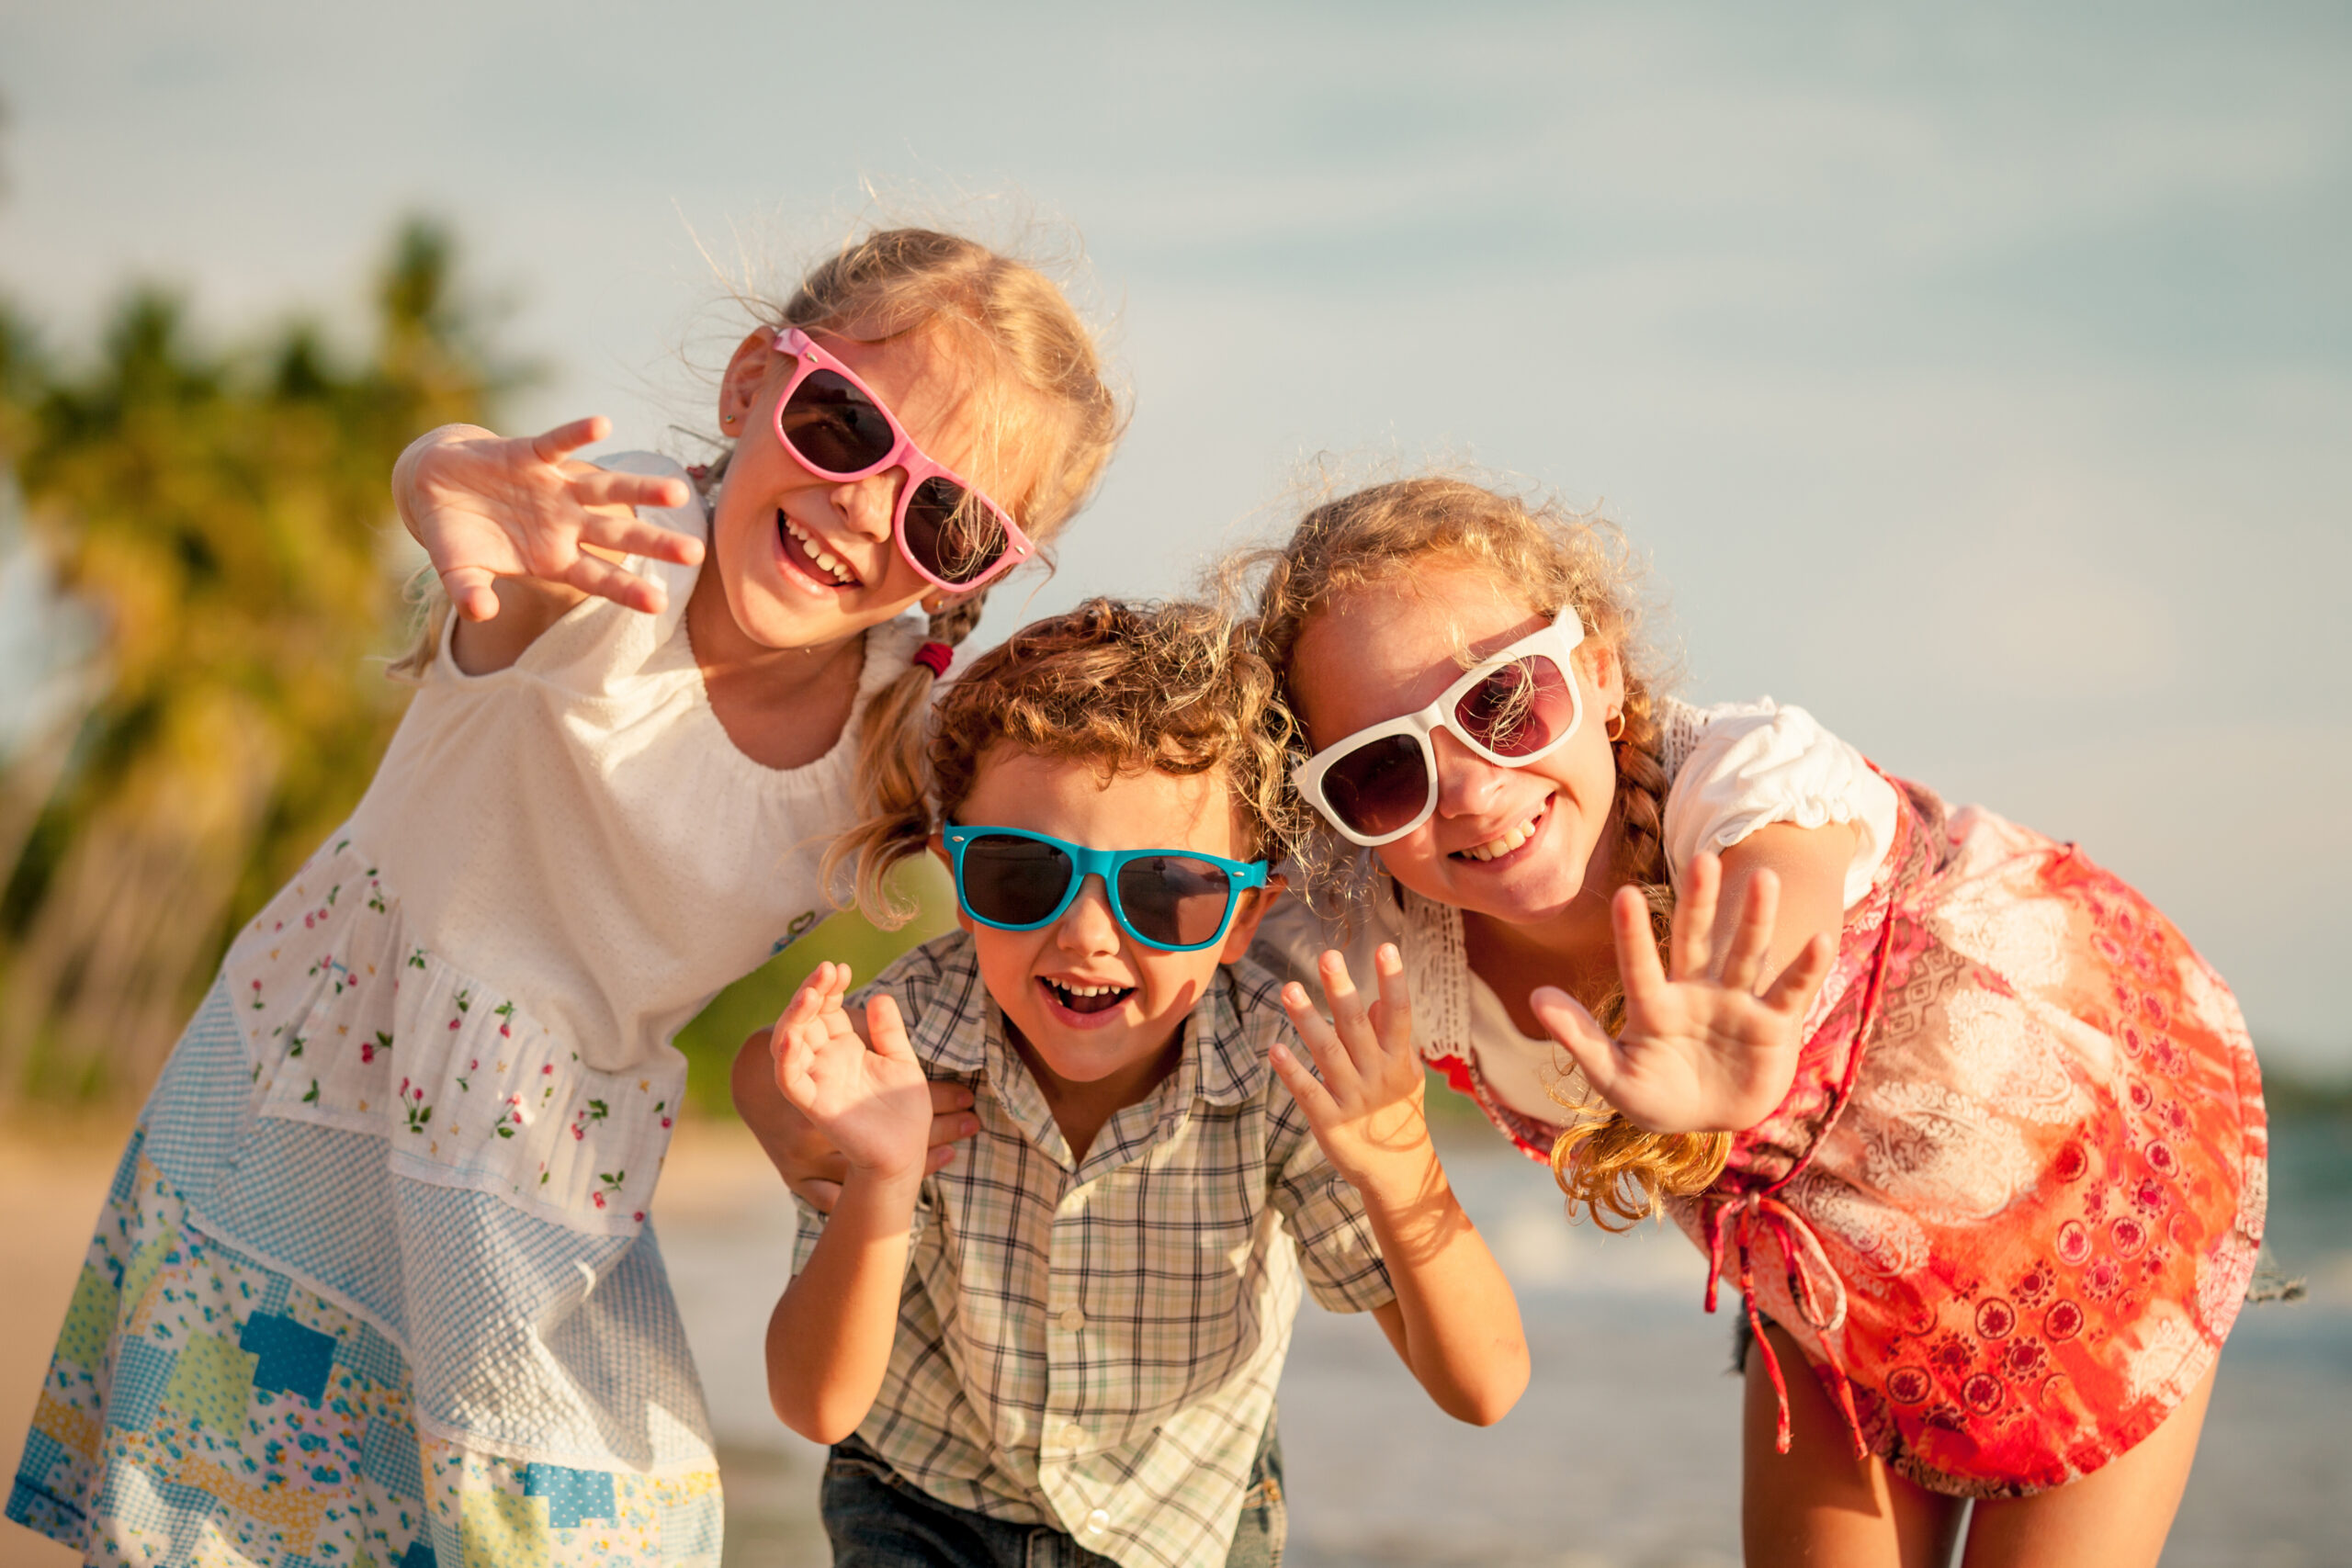 Three children wearing sunglasses on the beach.